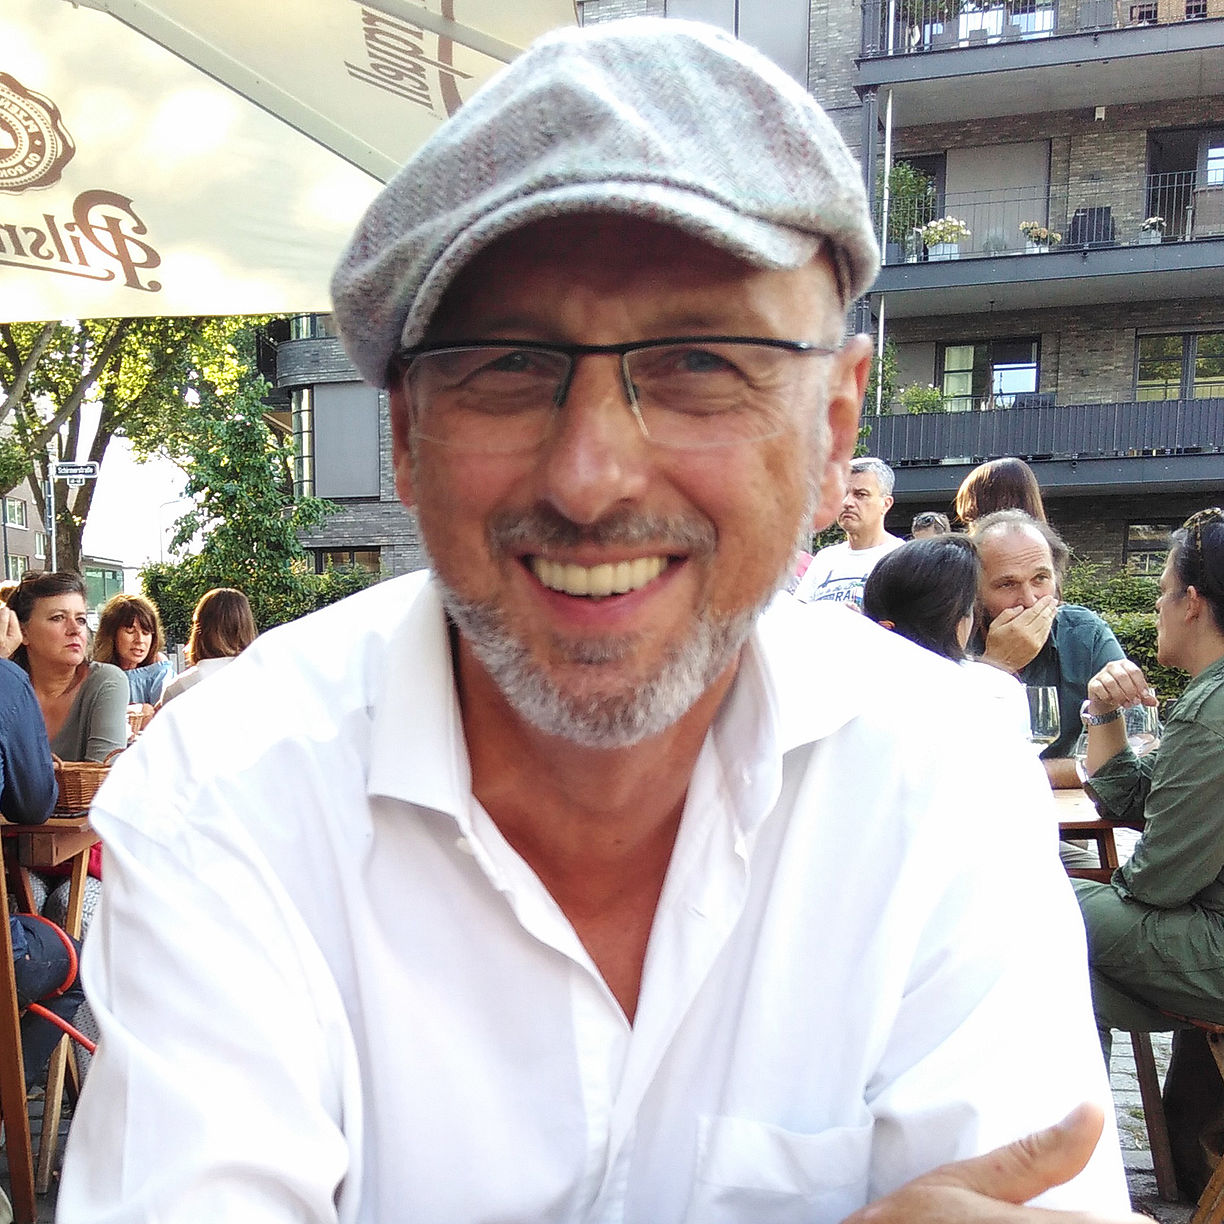 Herr Peter Plaumann glücklich lächelnd im Café